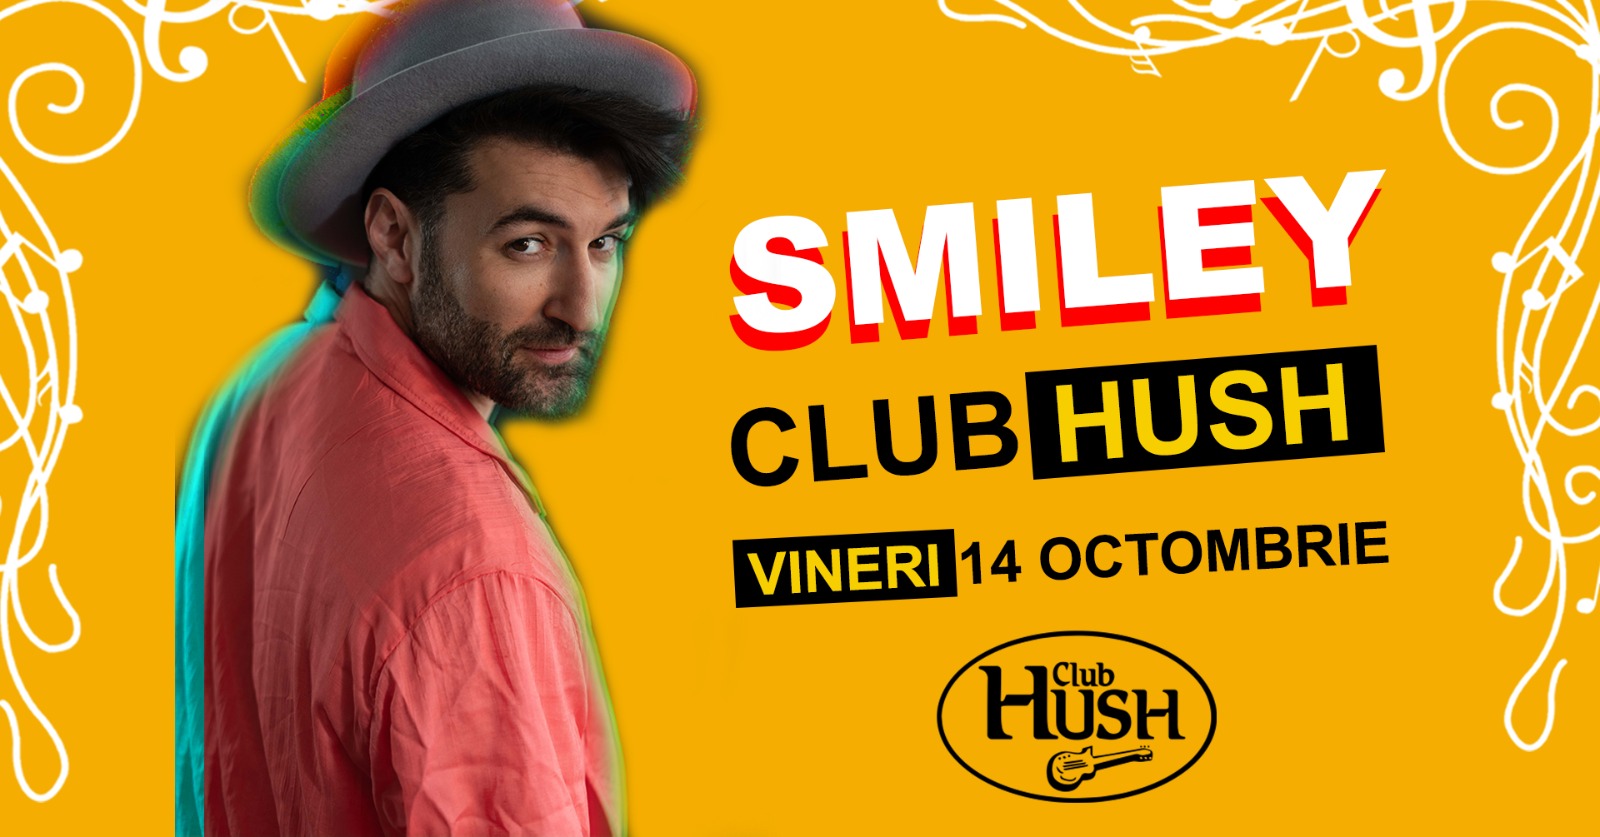 Smiley @Club Hush Pitesti